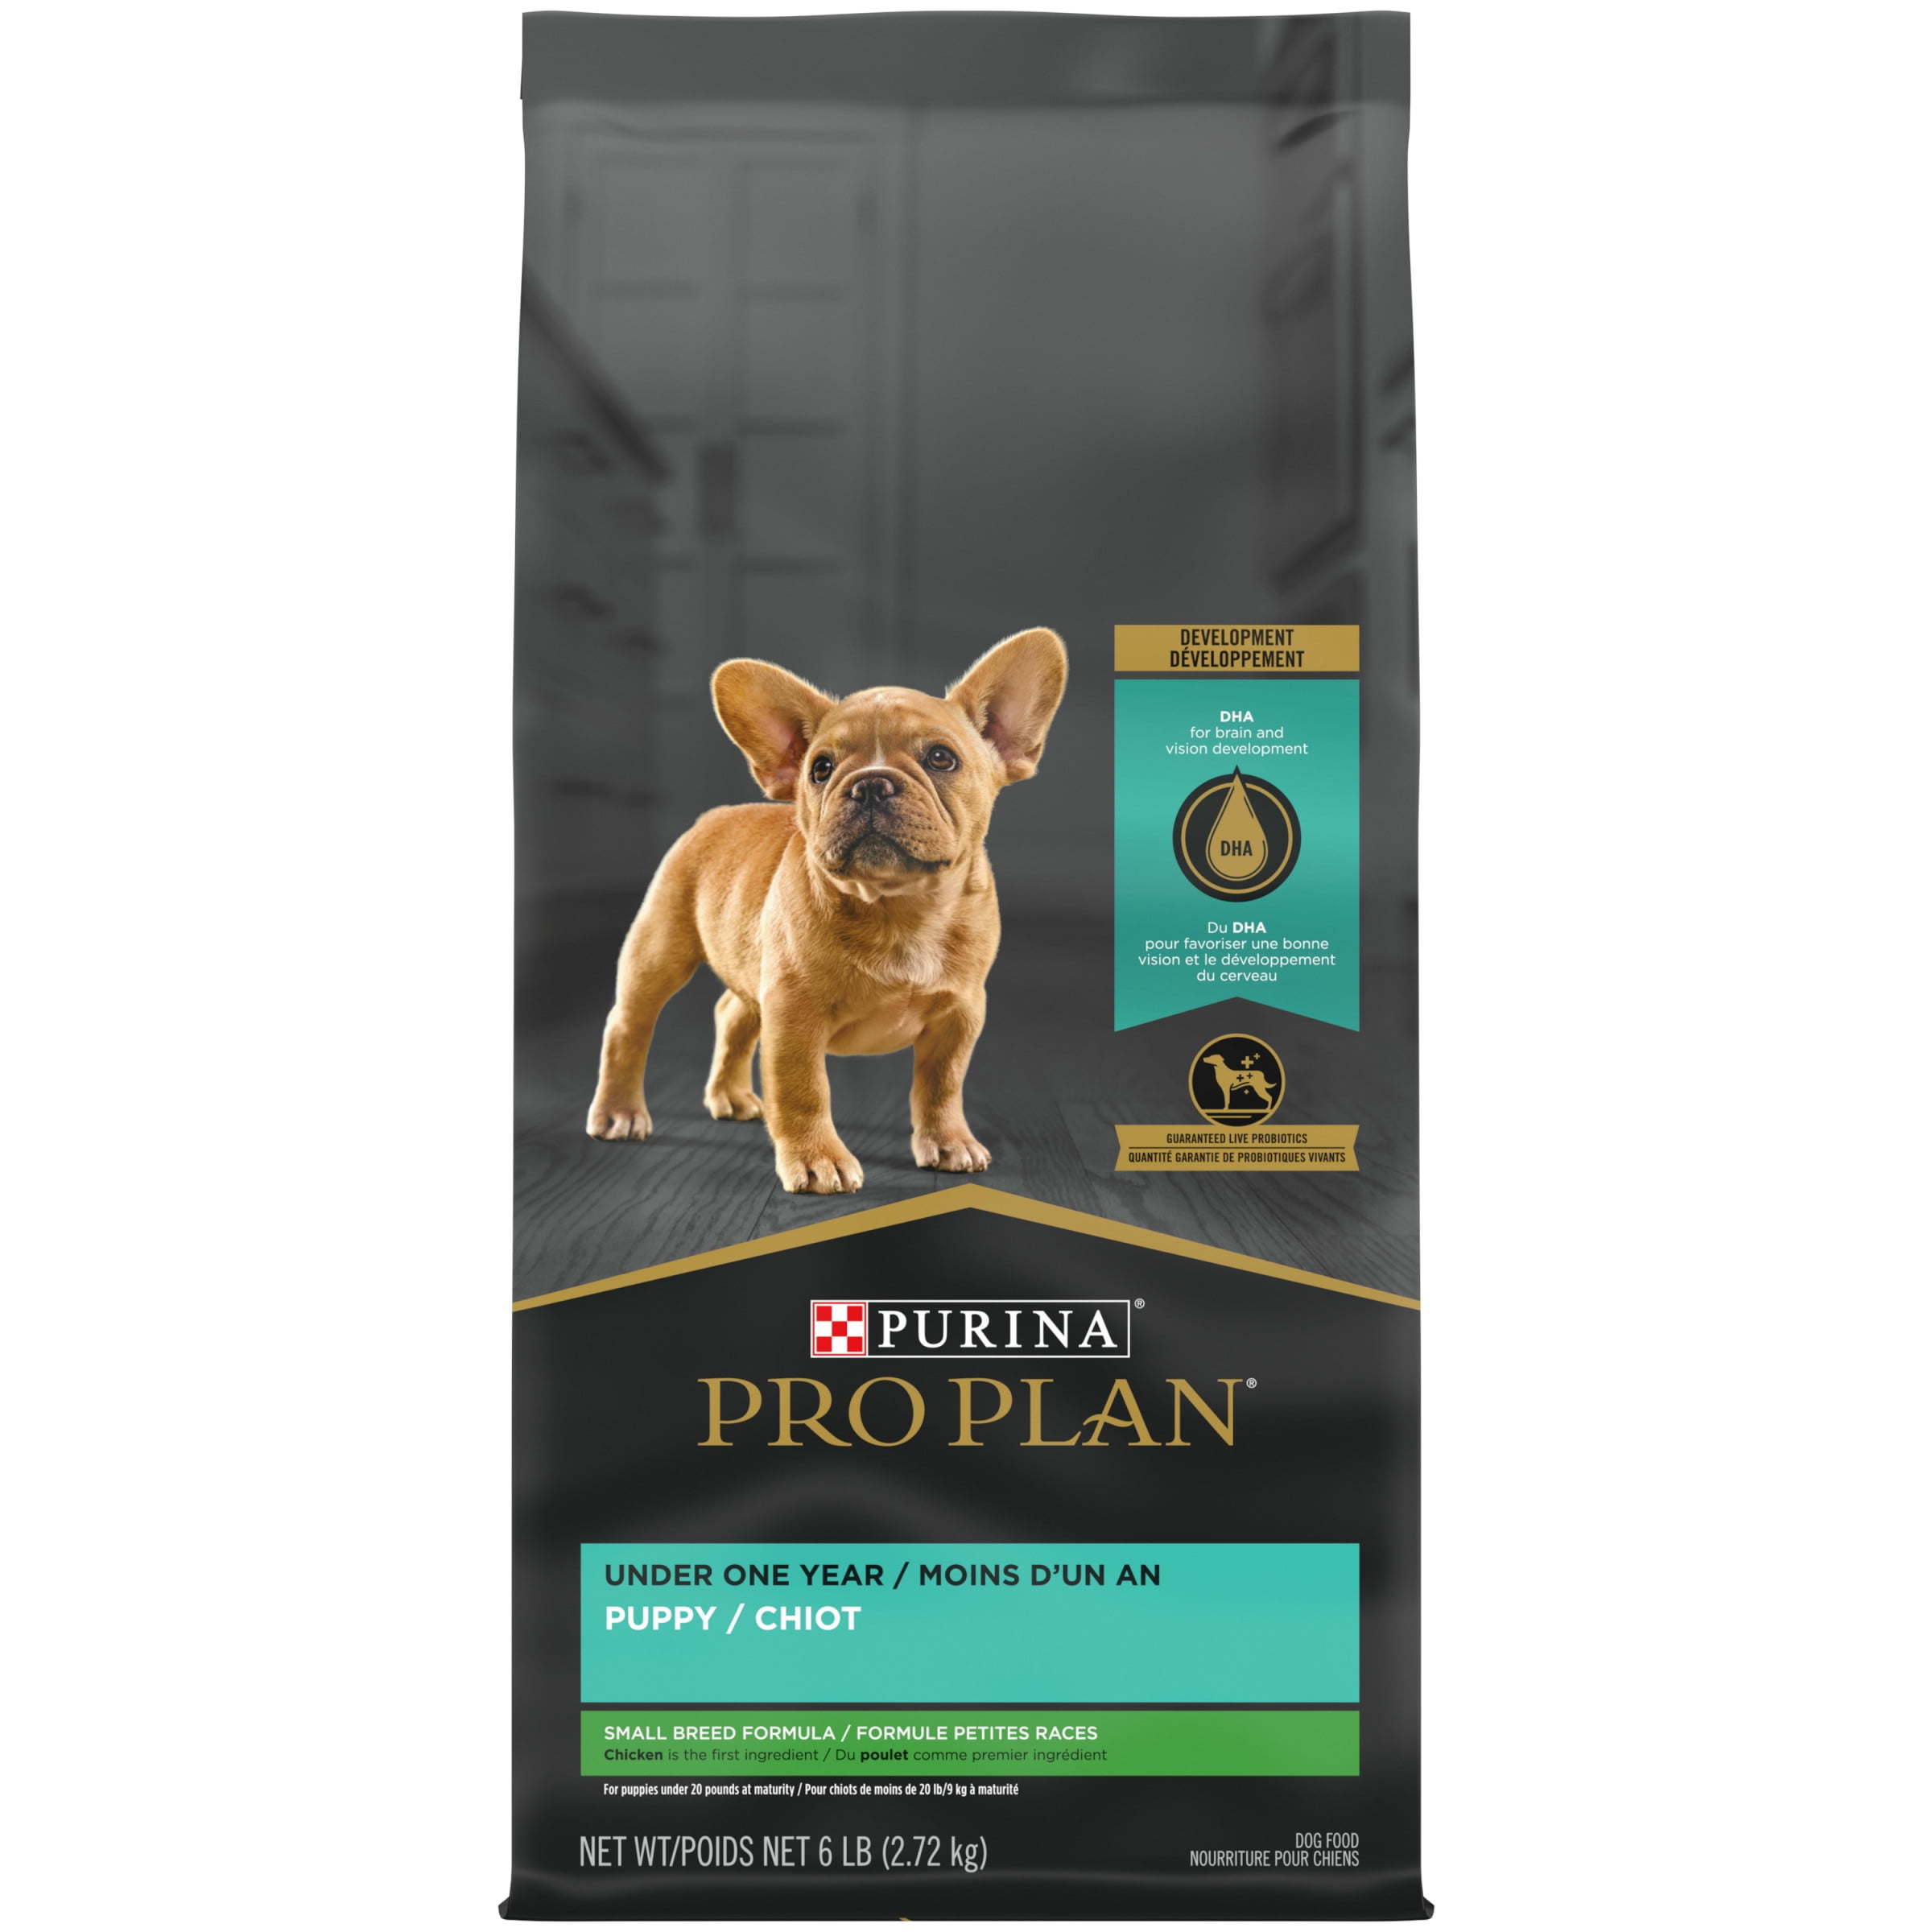 Купить корм для собак pro plan. Проплан Breeder Pack. Реклама собачьего корма Pro Plan. Genom корм для собак курица рис фото.